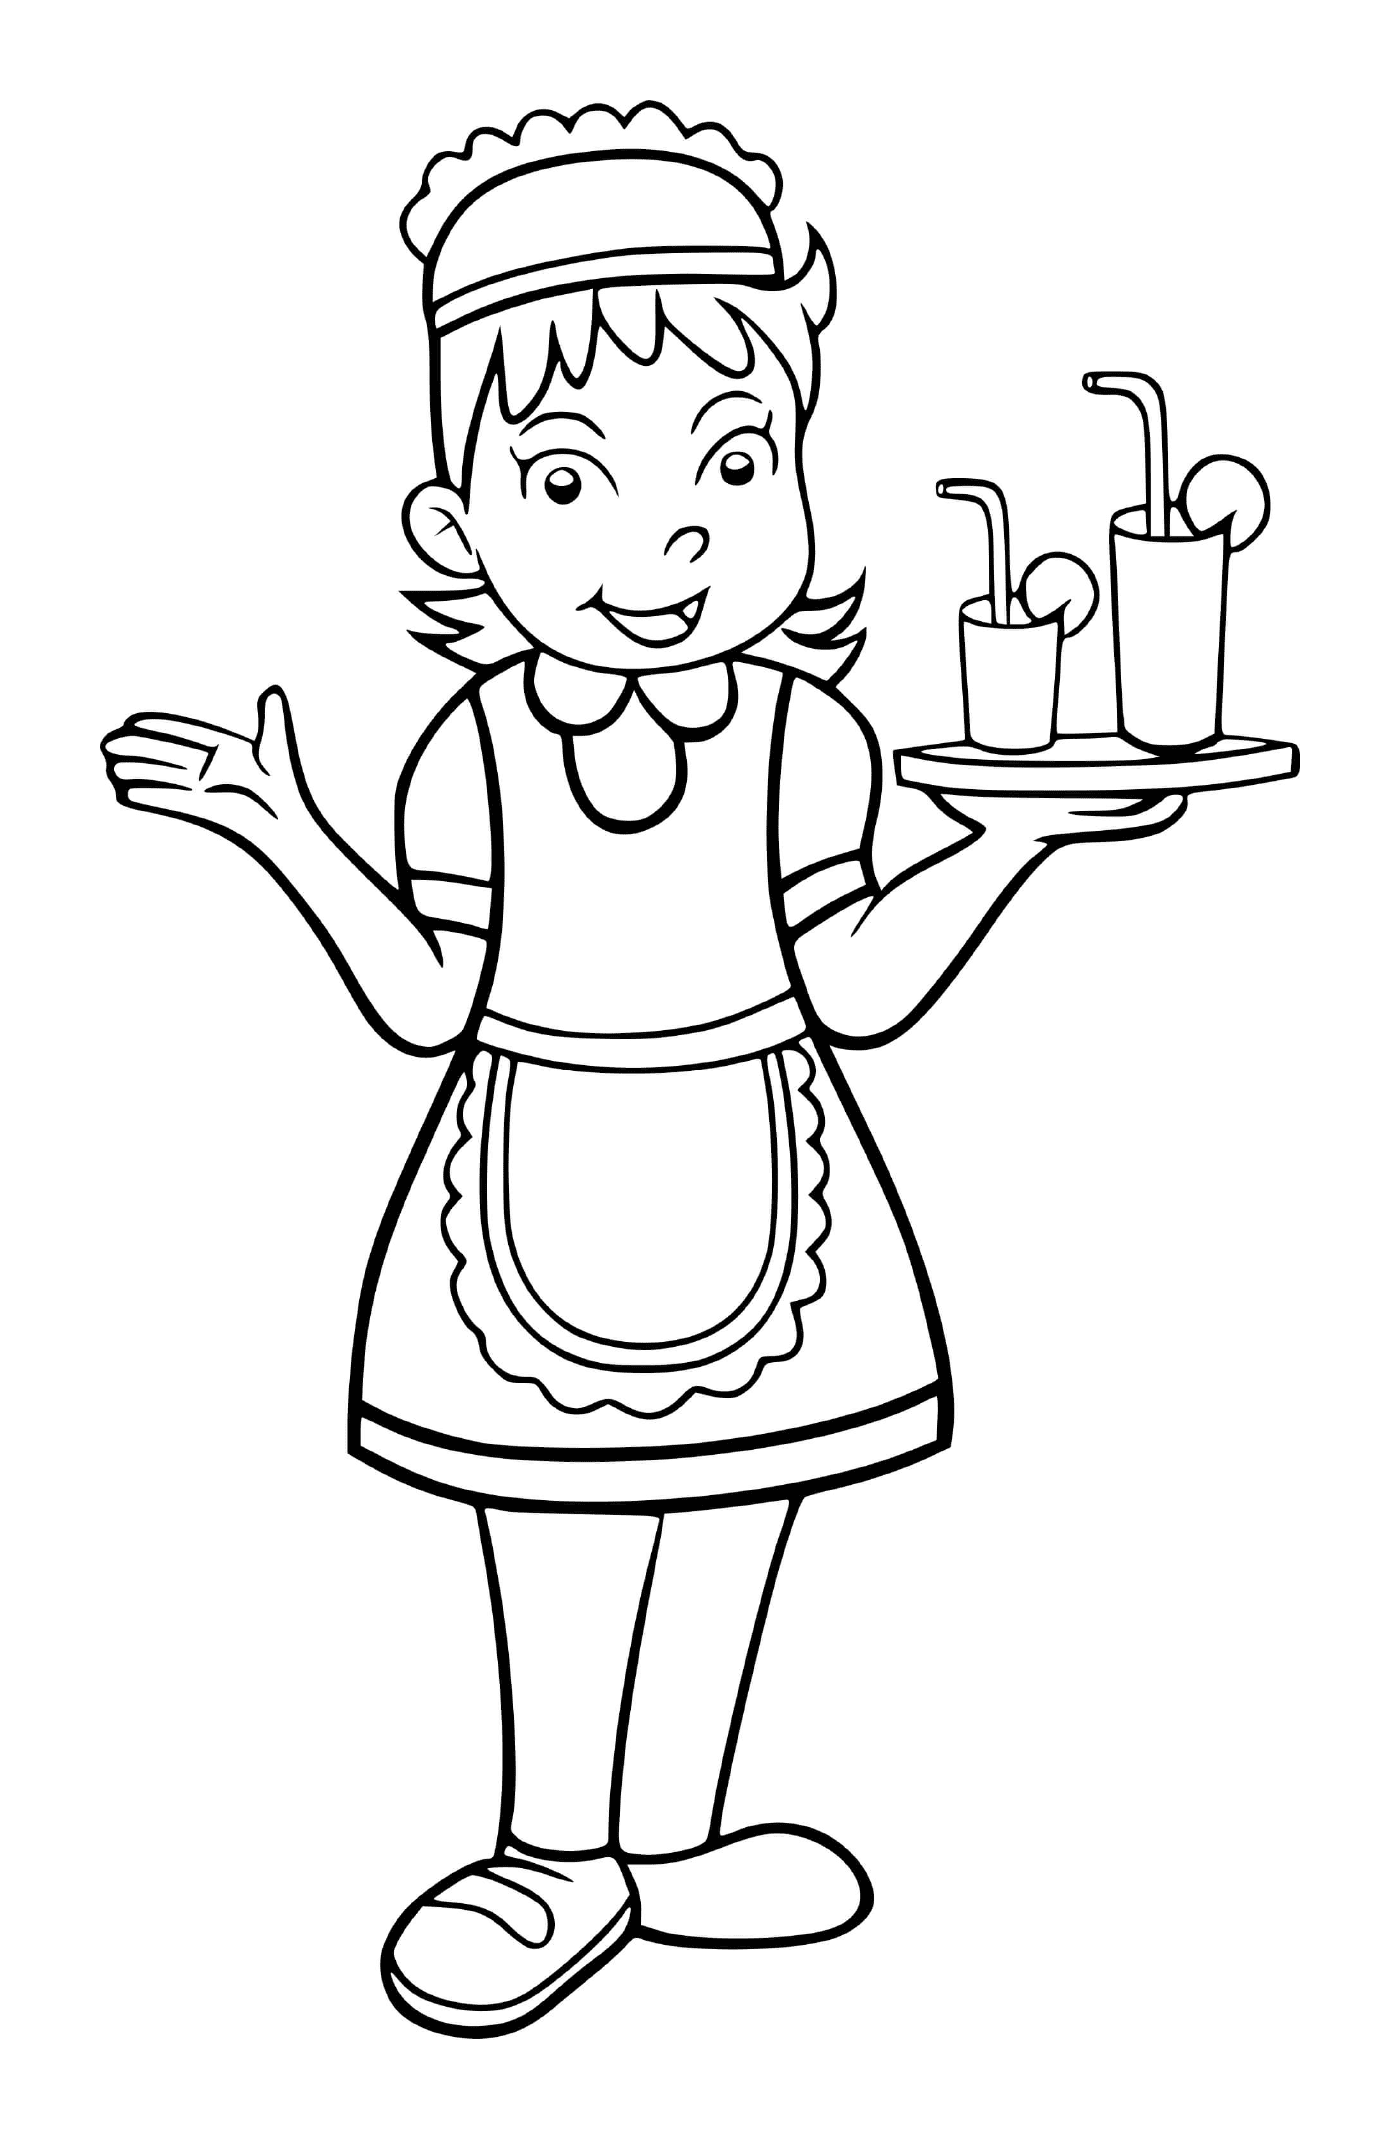  一个女孩在一家大餐馆装扮成女服务员 